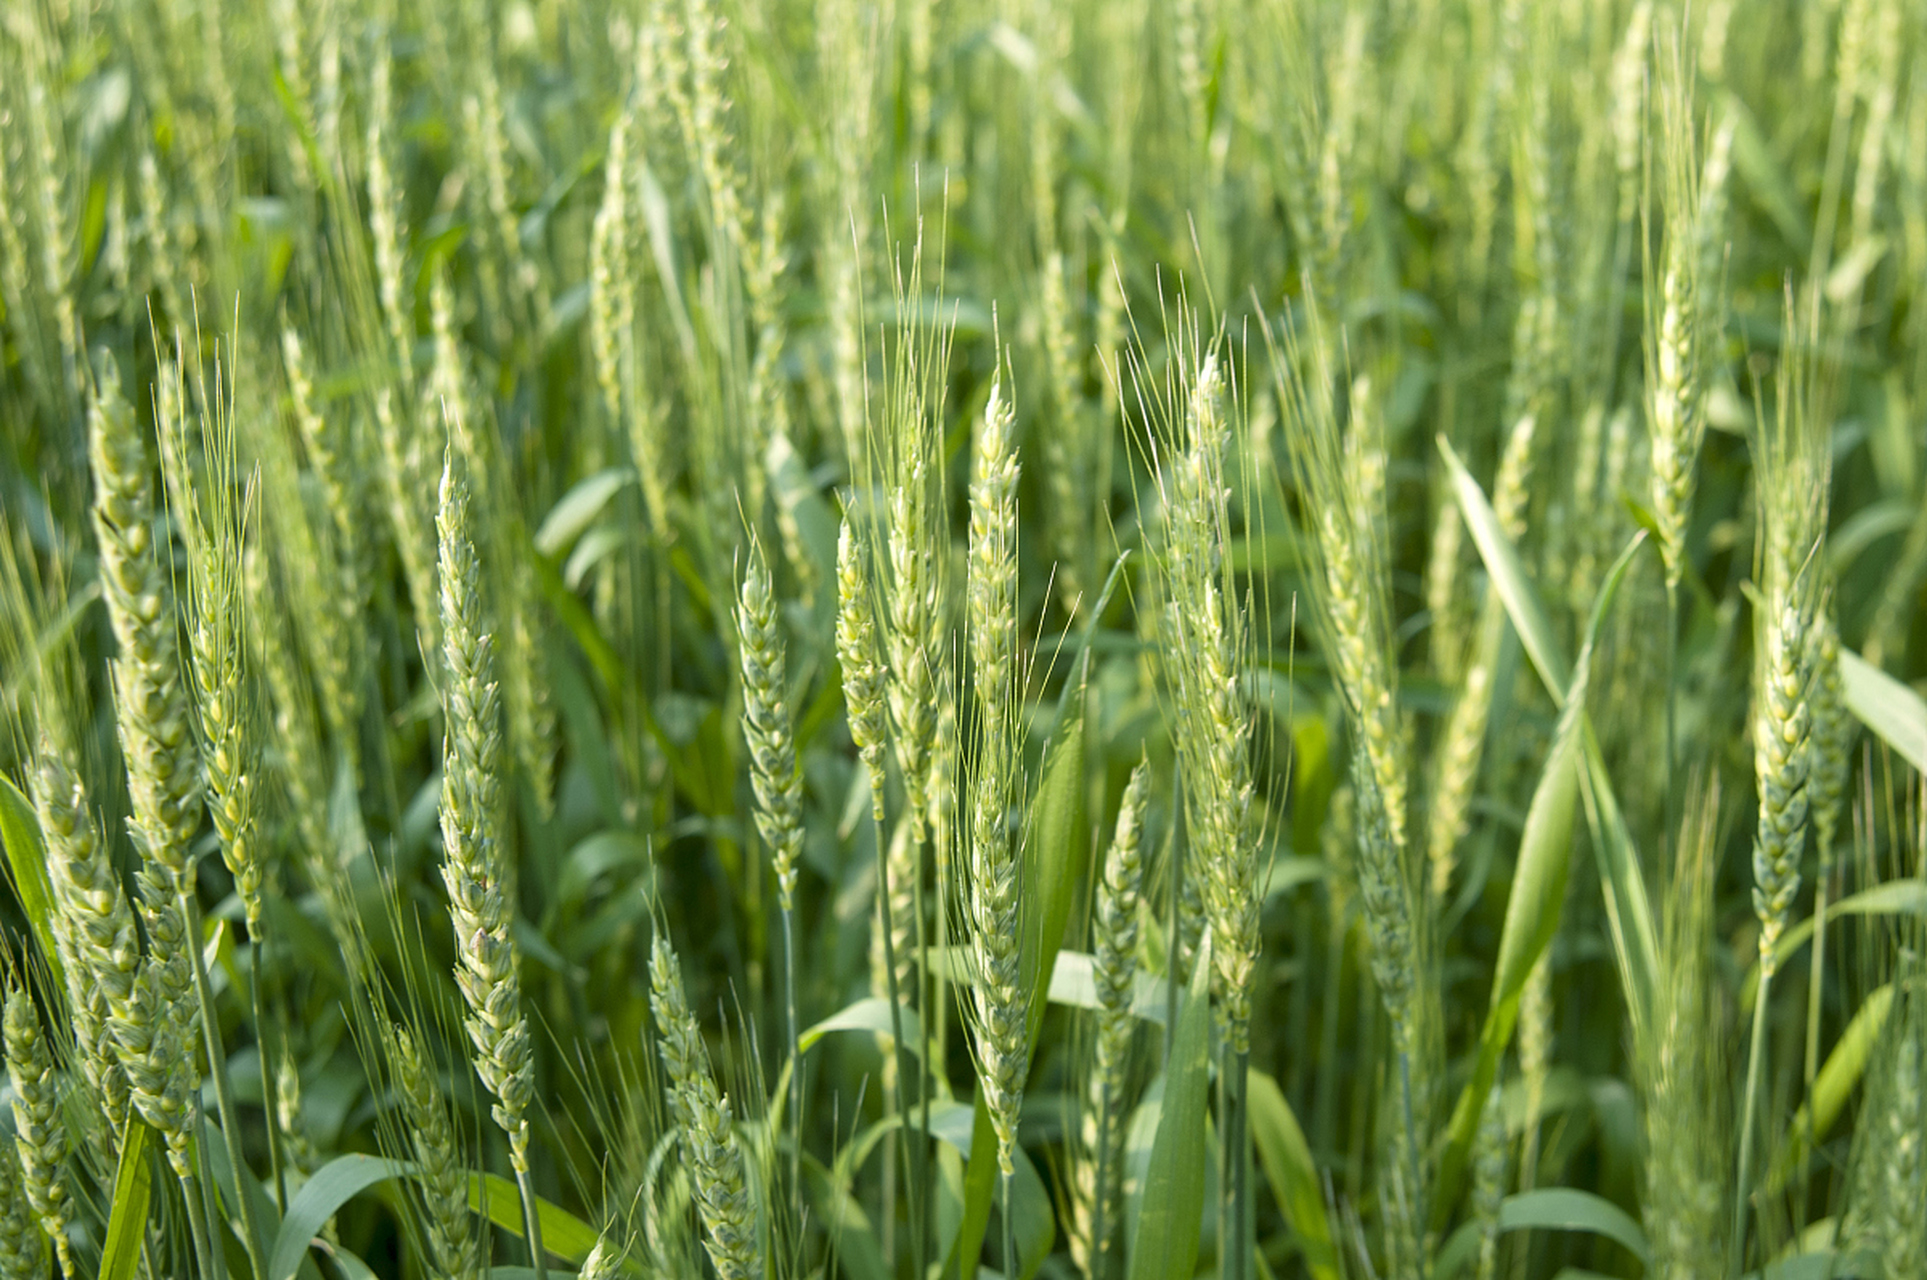 艾麦24是一种半冬性中早熟的小麦品种,全生育期为224